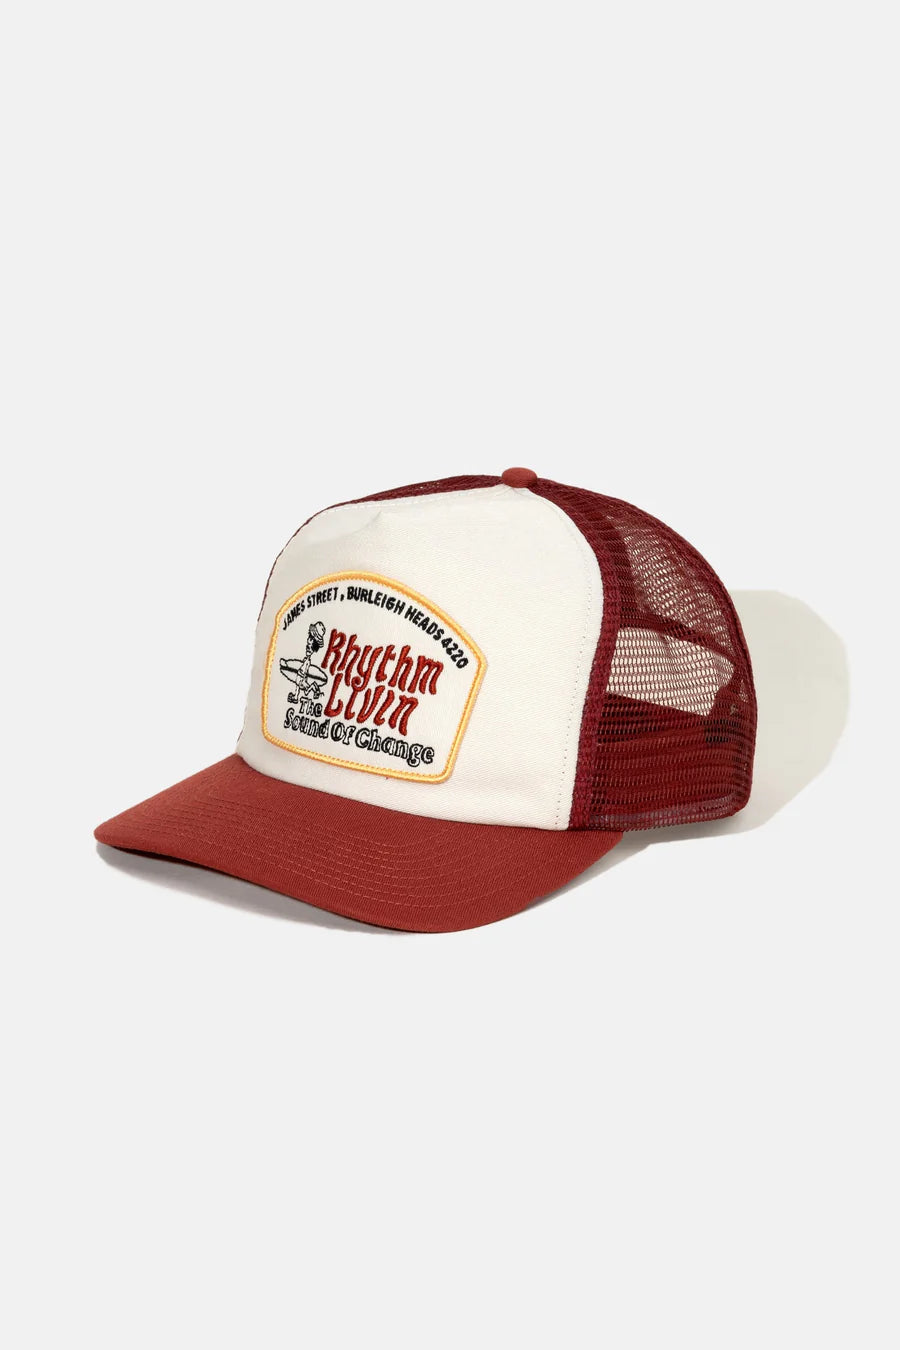 Rhythm Pathway Trucker Cap Red